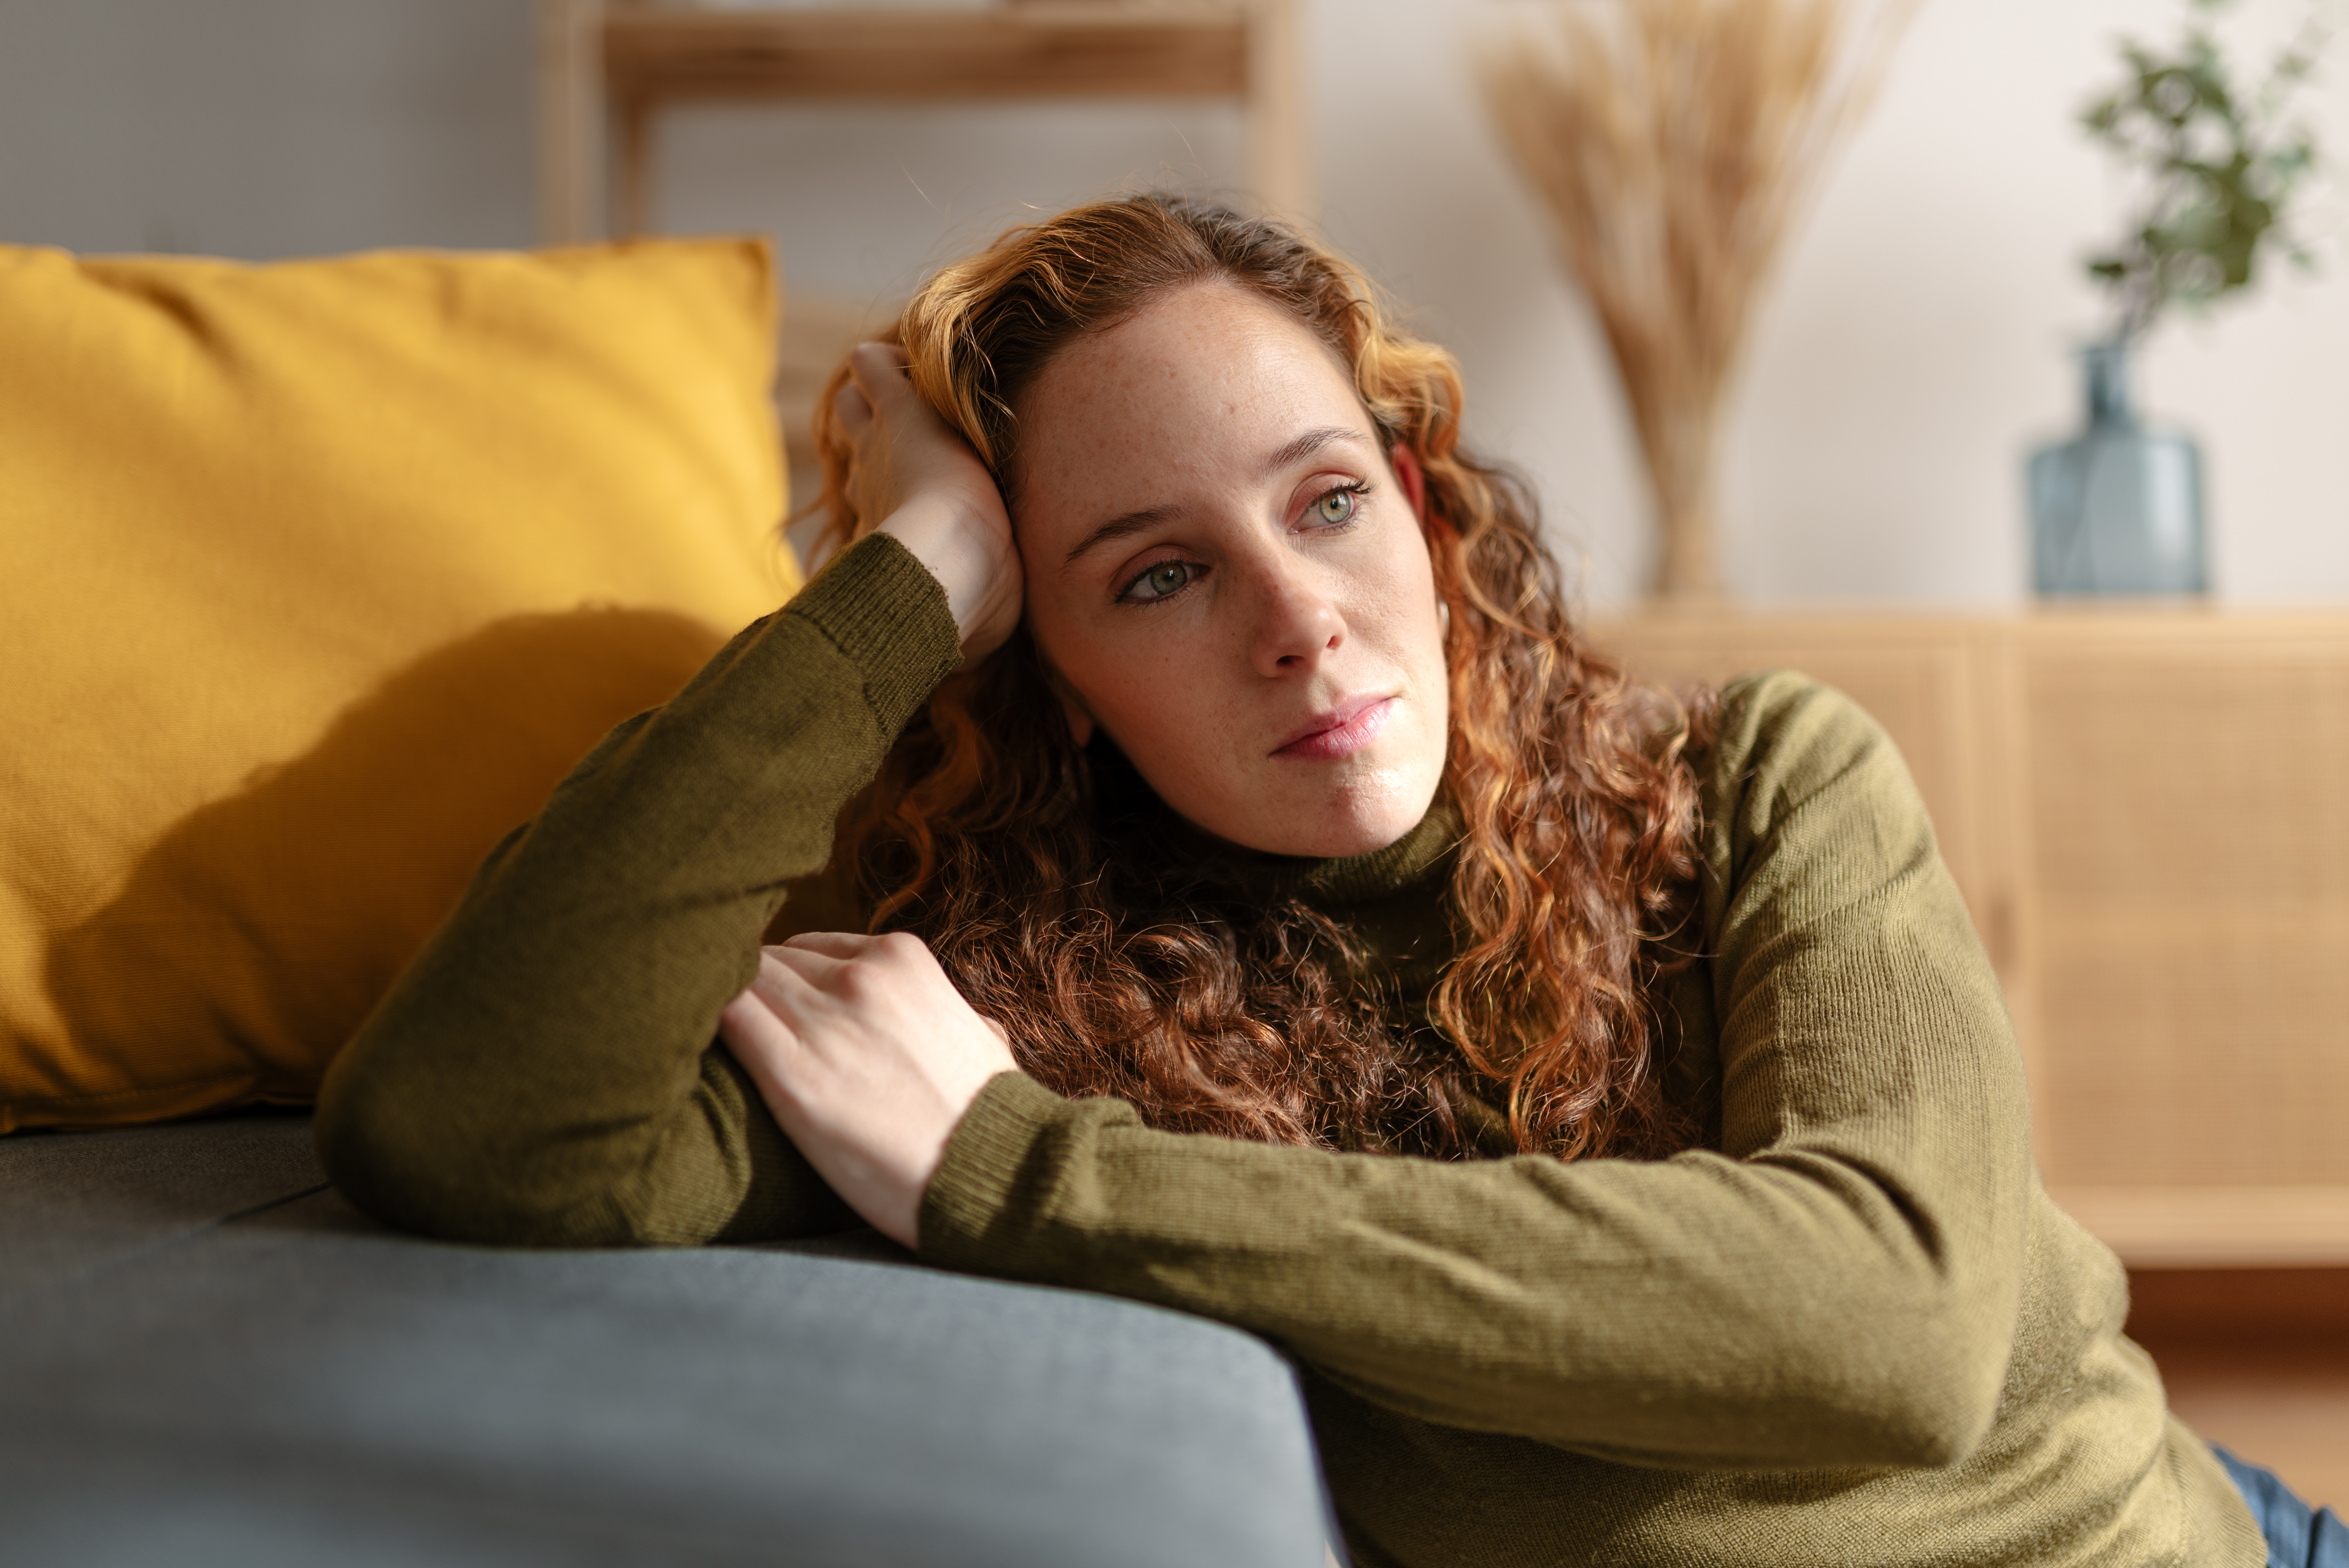 Portrait d'une jeune femme aux longs cheveux roux bouclés, assise par terre et appuyée sur un canapé, regardant au loin, le visage triste. | Source : Getty Images